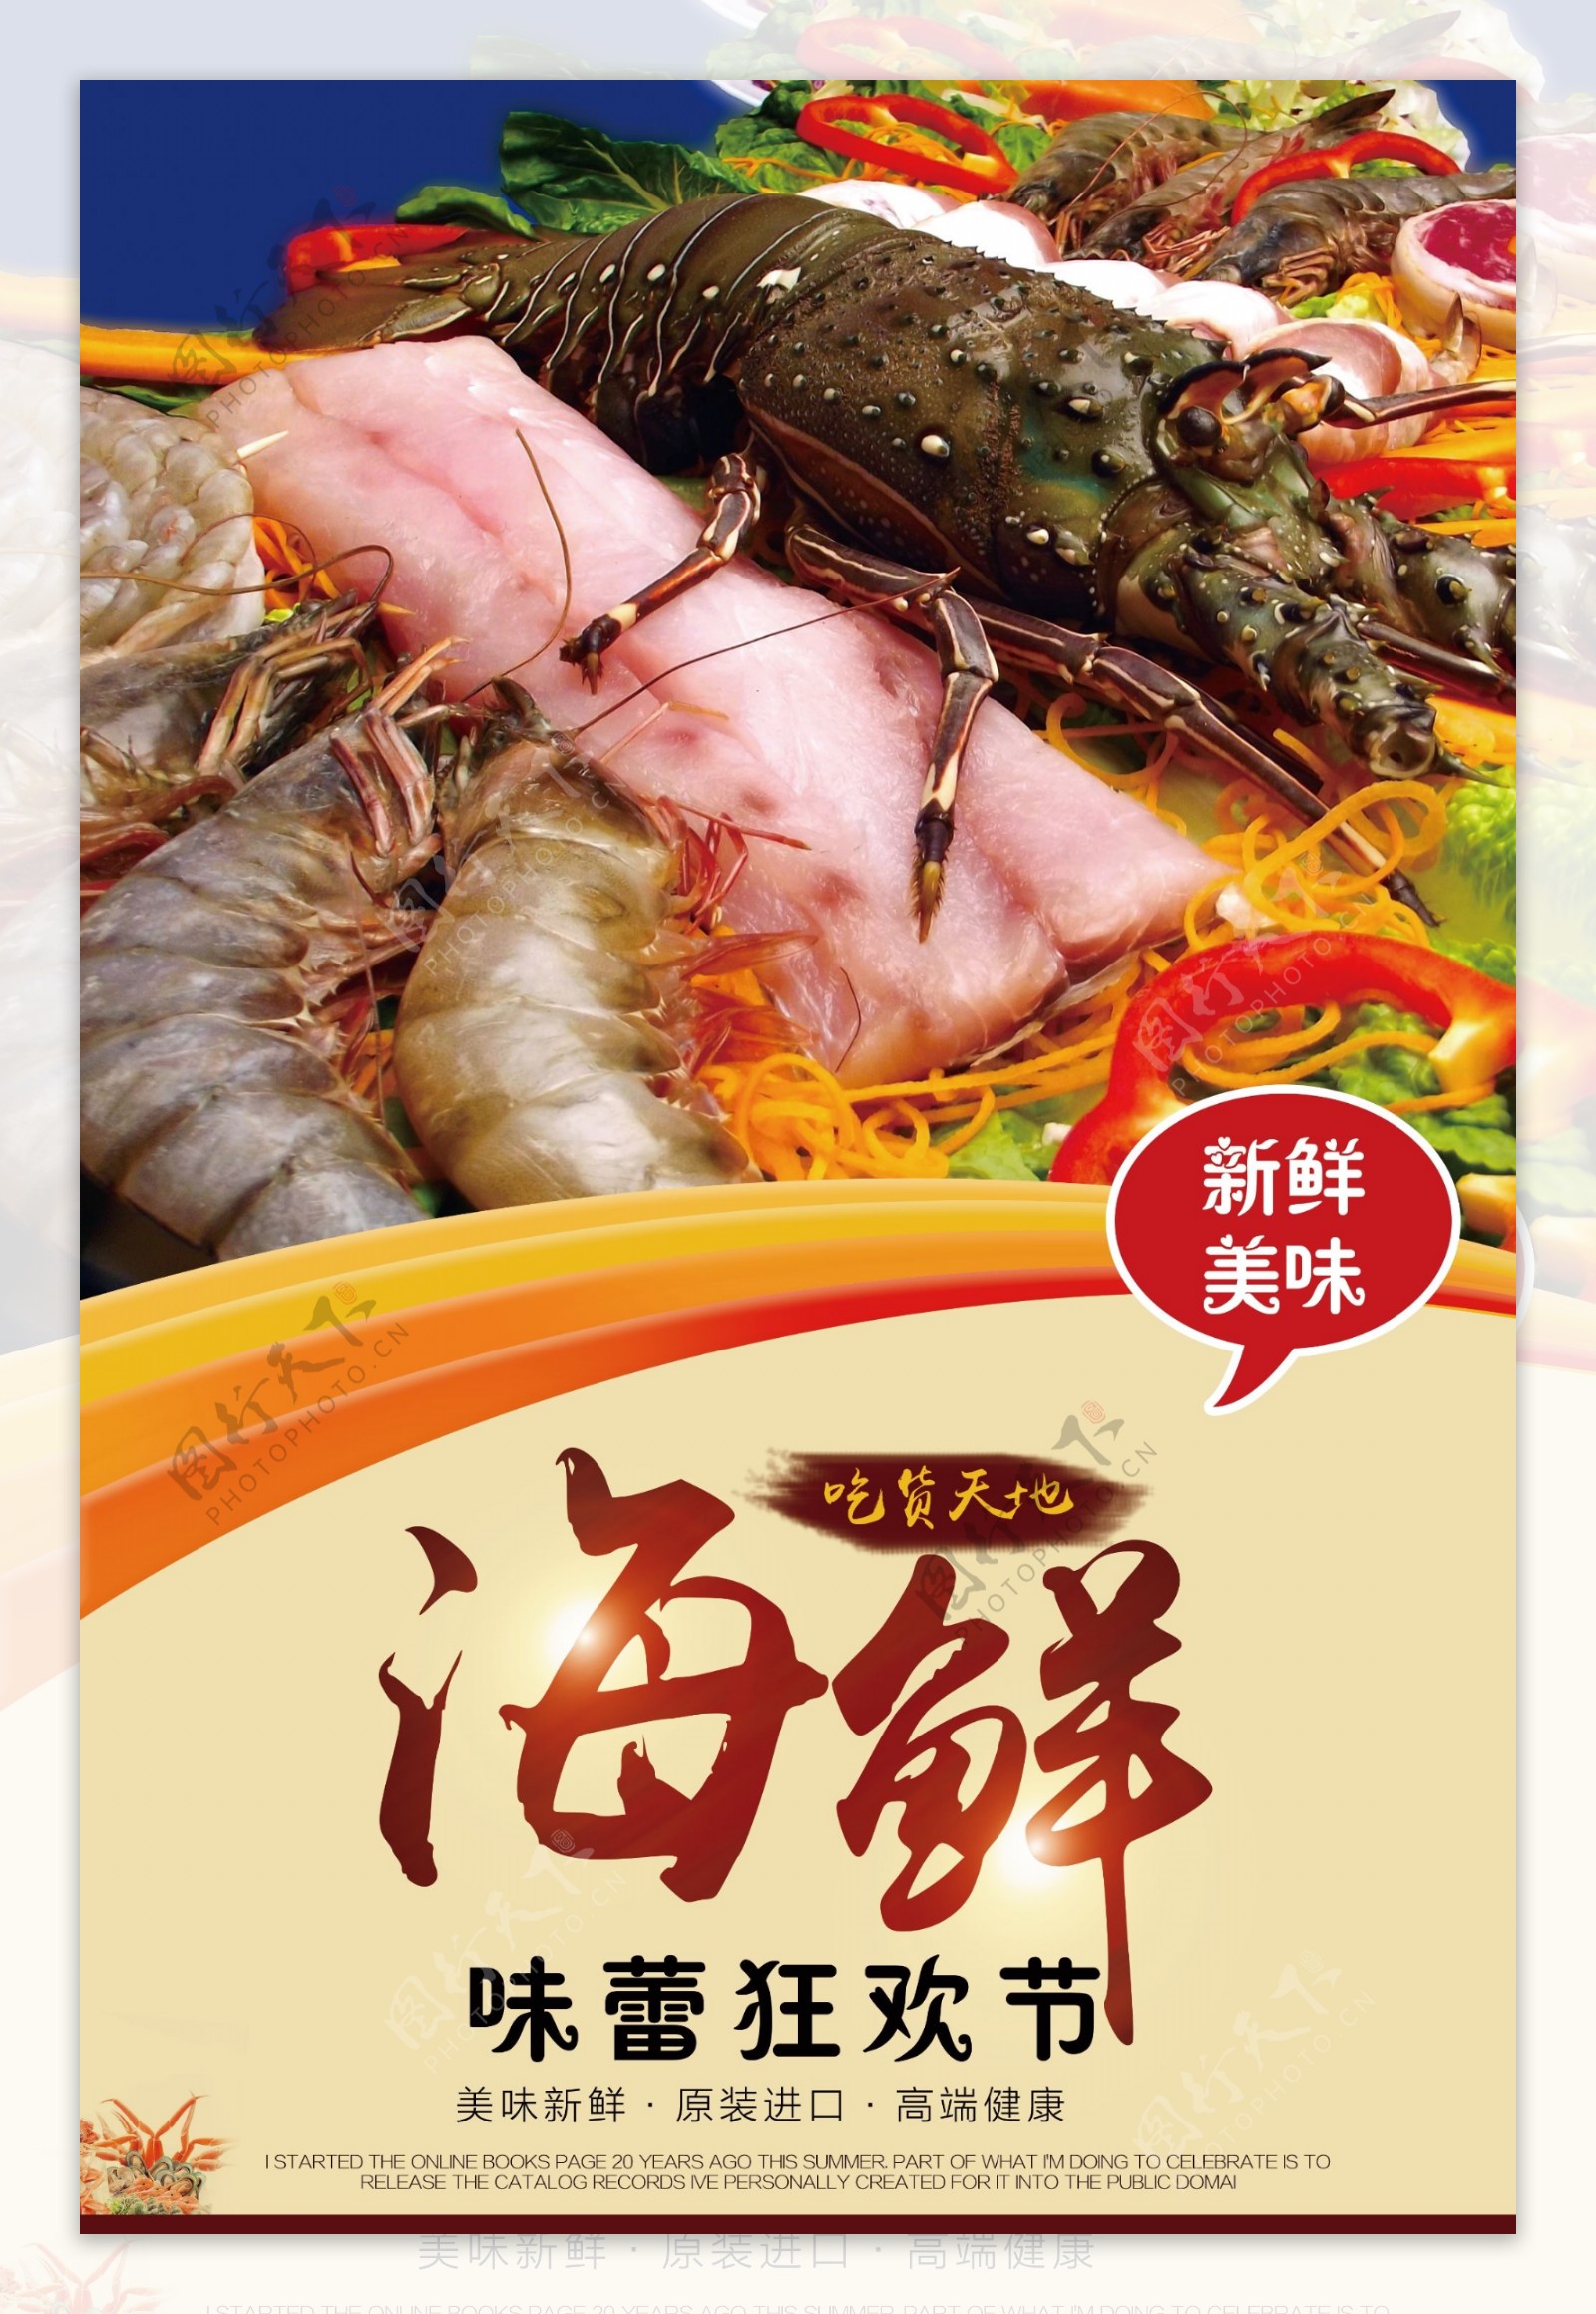 海鲜美食宣传促销海报